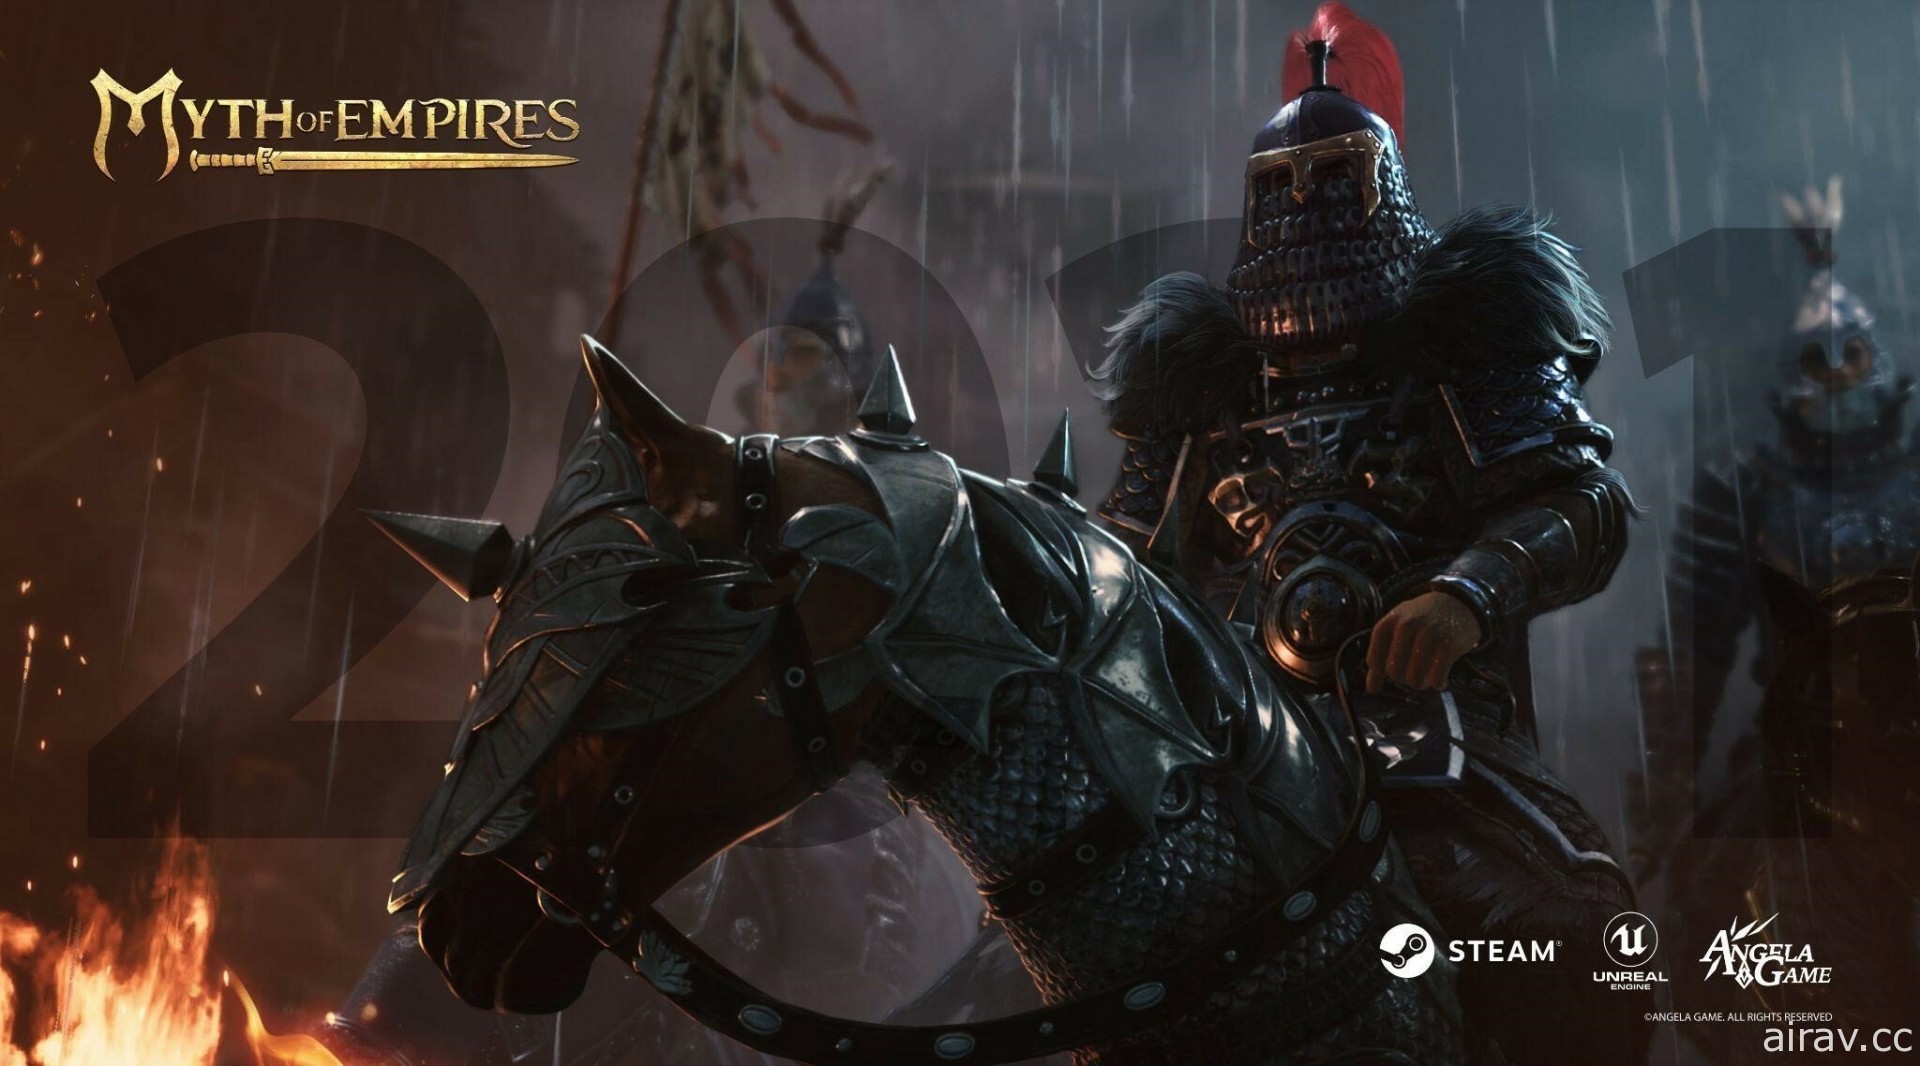 《帝國神話》被質疑侵權遭 Steam 下架 開發商提起訴訟希望爭取恢復上架